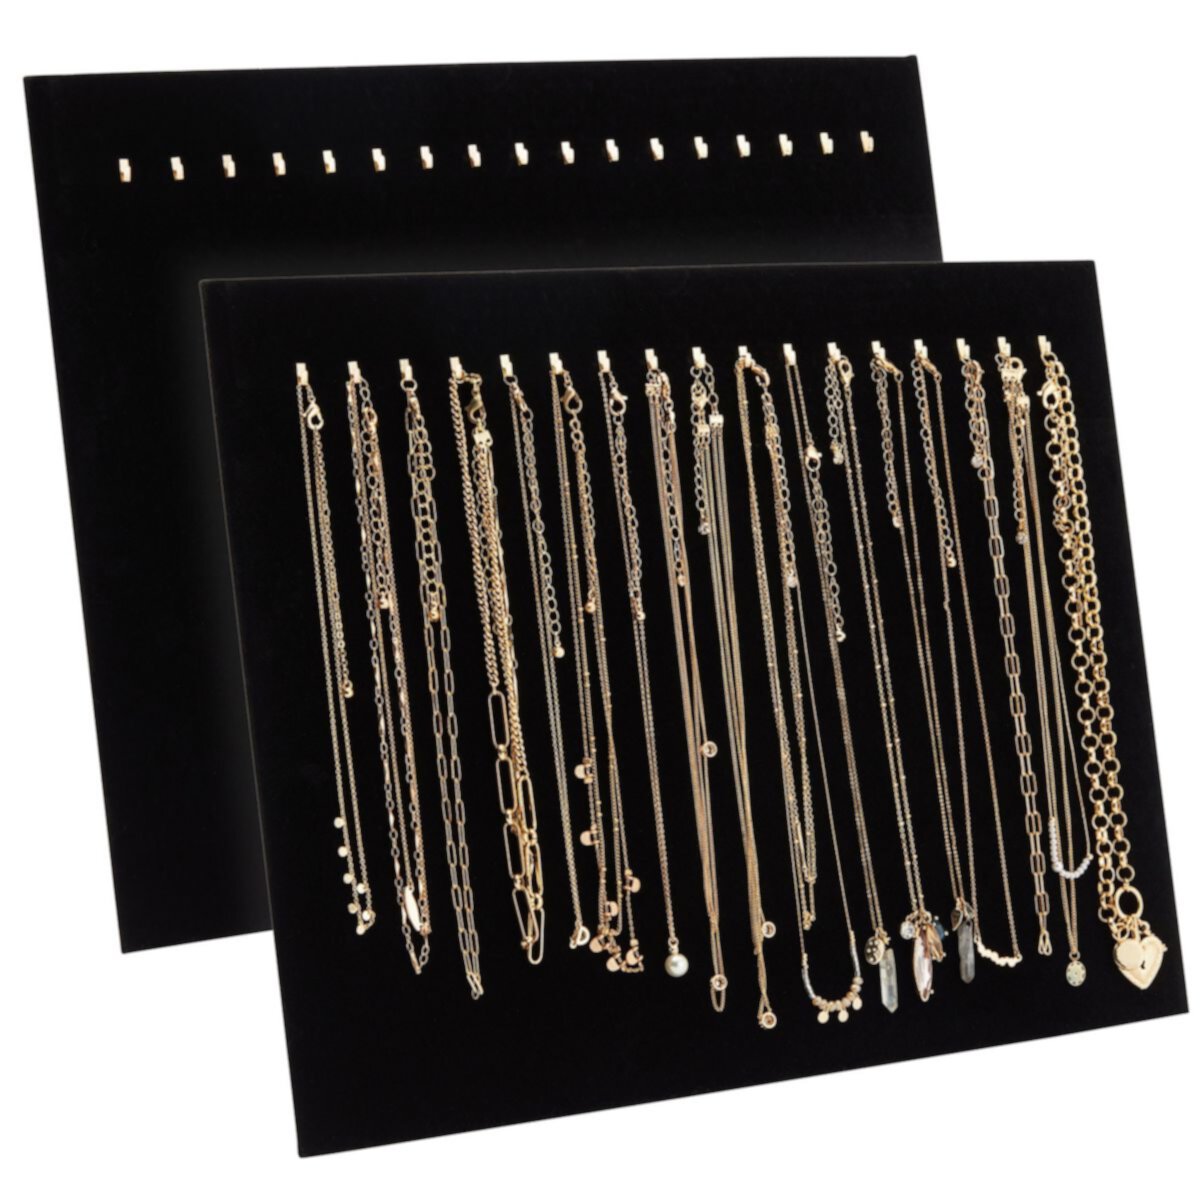 2 упаковки ювелирных витрин с крючками, черные бархатные подставки для бутика ожерелья для всплывающего магазина (14,6 x 11,9 x 4,5 дюйма) Bright Creations